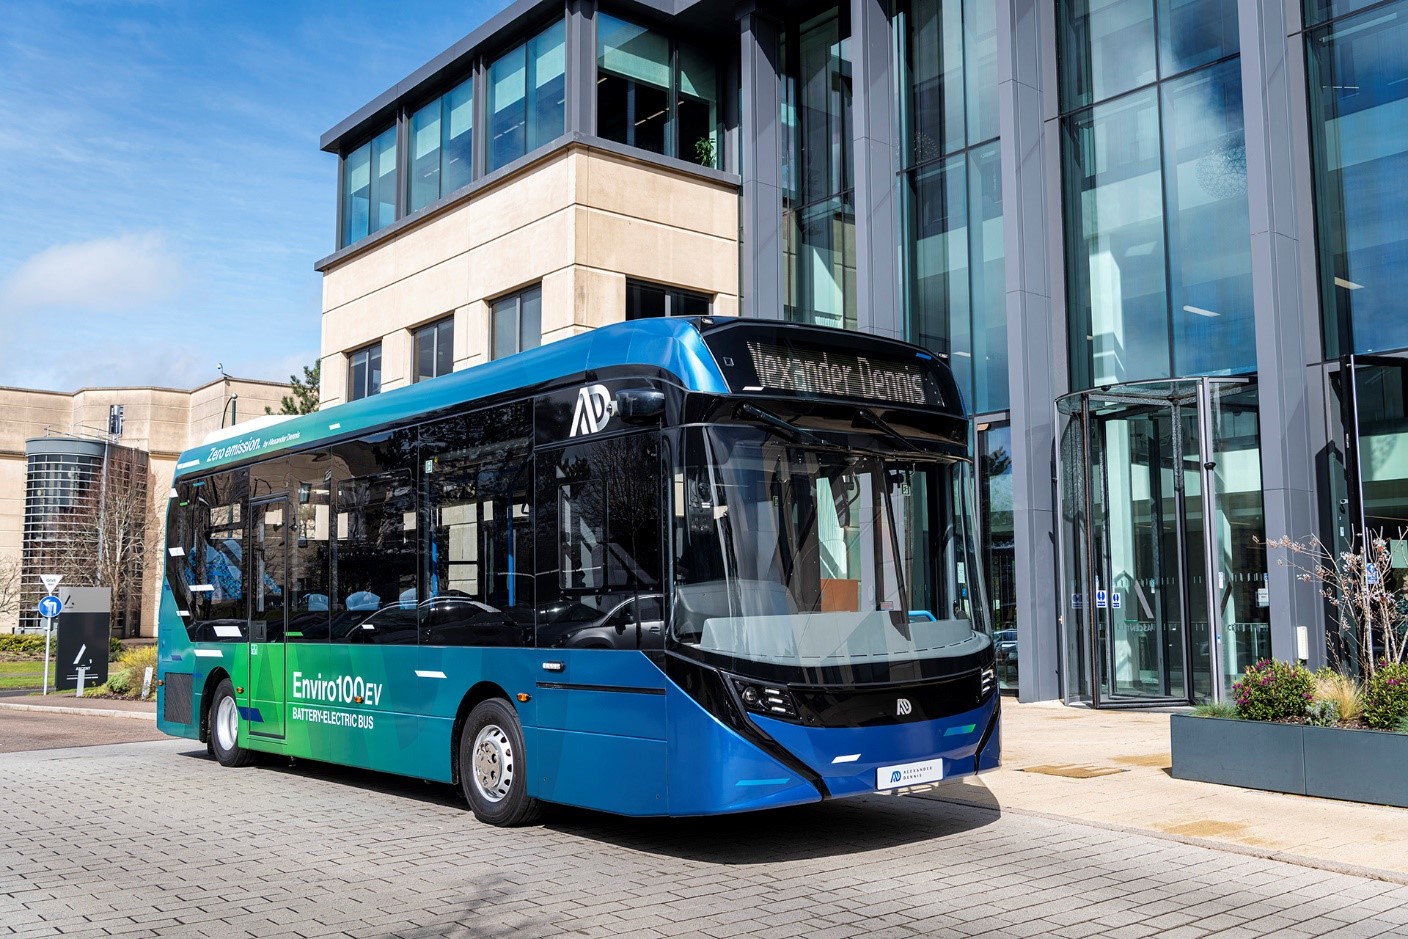 Cambridge welcomes three autonomous electric buses